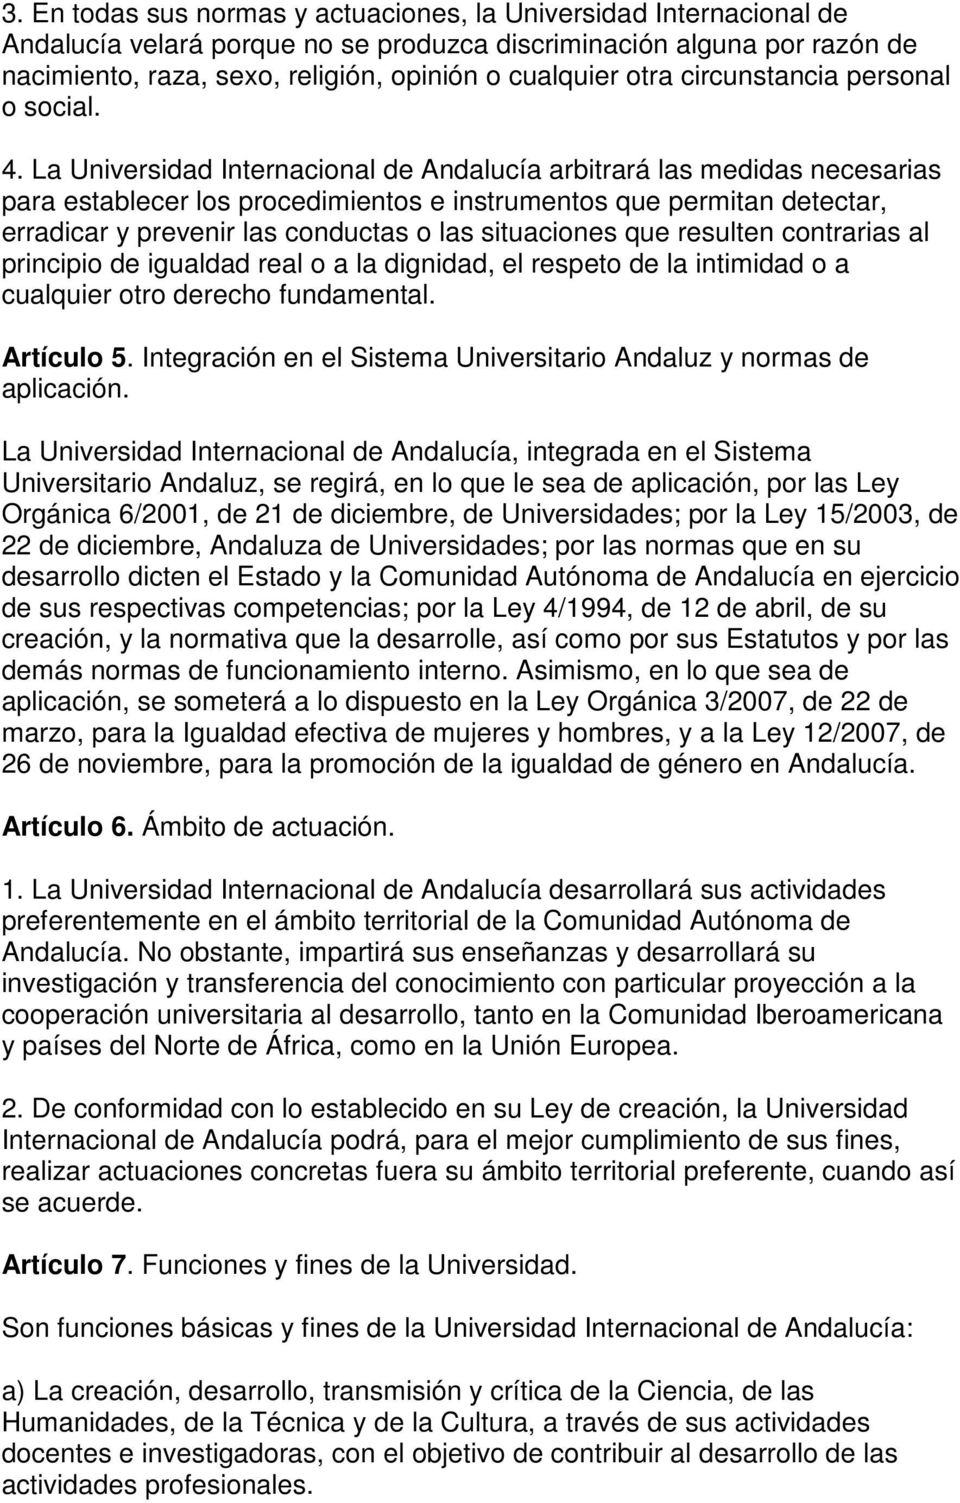 La Universidad Internacional de Andalucía arbitrará las medidas necesarias para establecer los procedimientos e instrumentos que permitan detectar, erradicar y prevenir las conductas o las